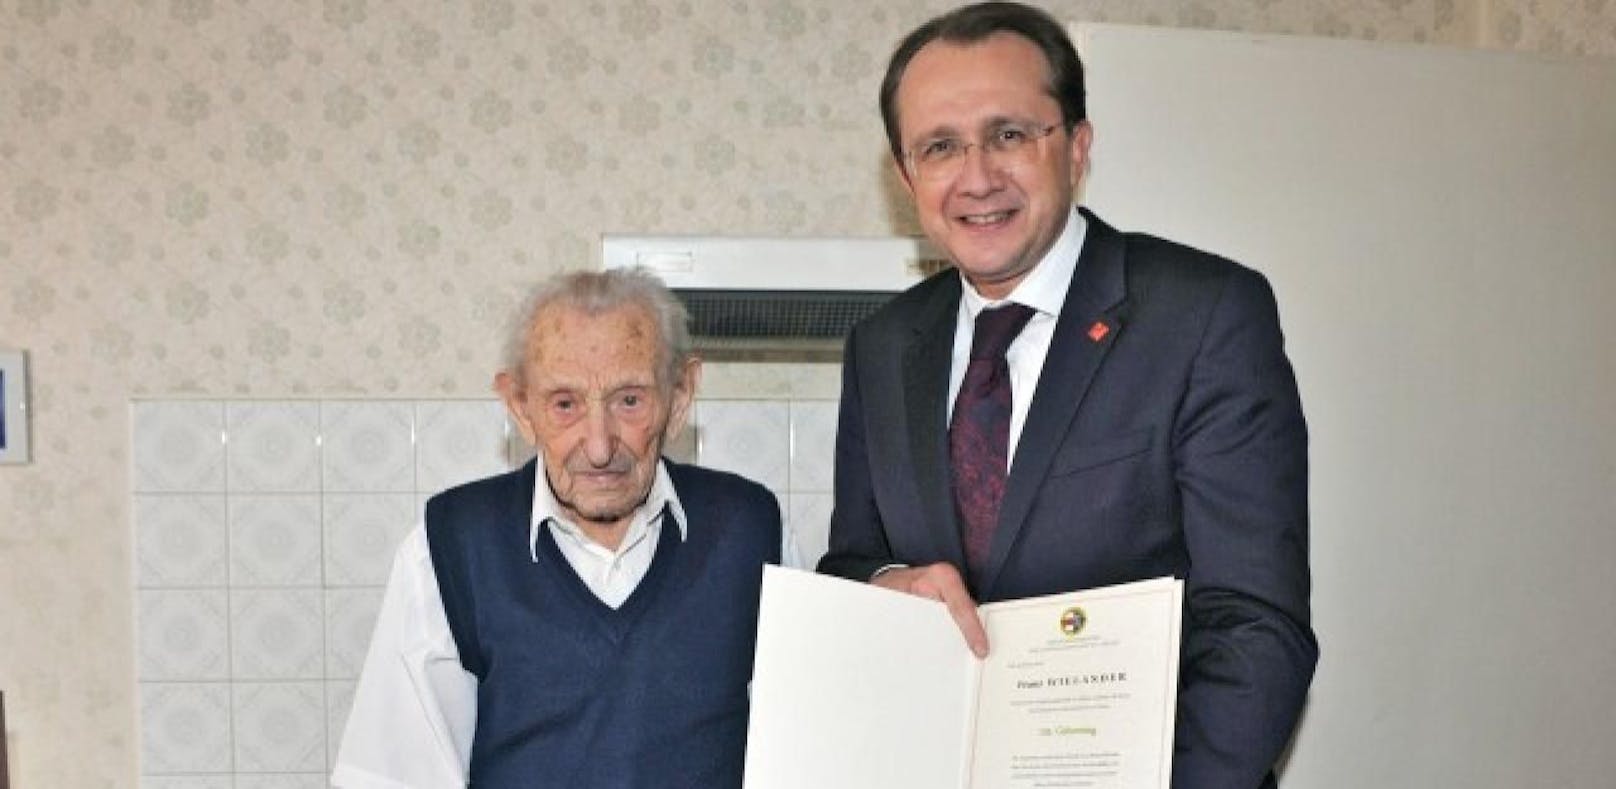 Bürgermeister Matthias Stadler gratuliert Franz Wielander, dem ältesten St. Pöltner, zu dessen 105. Geburtstag.